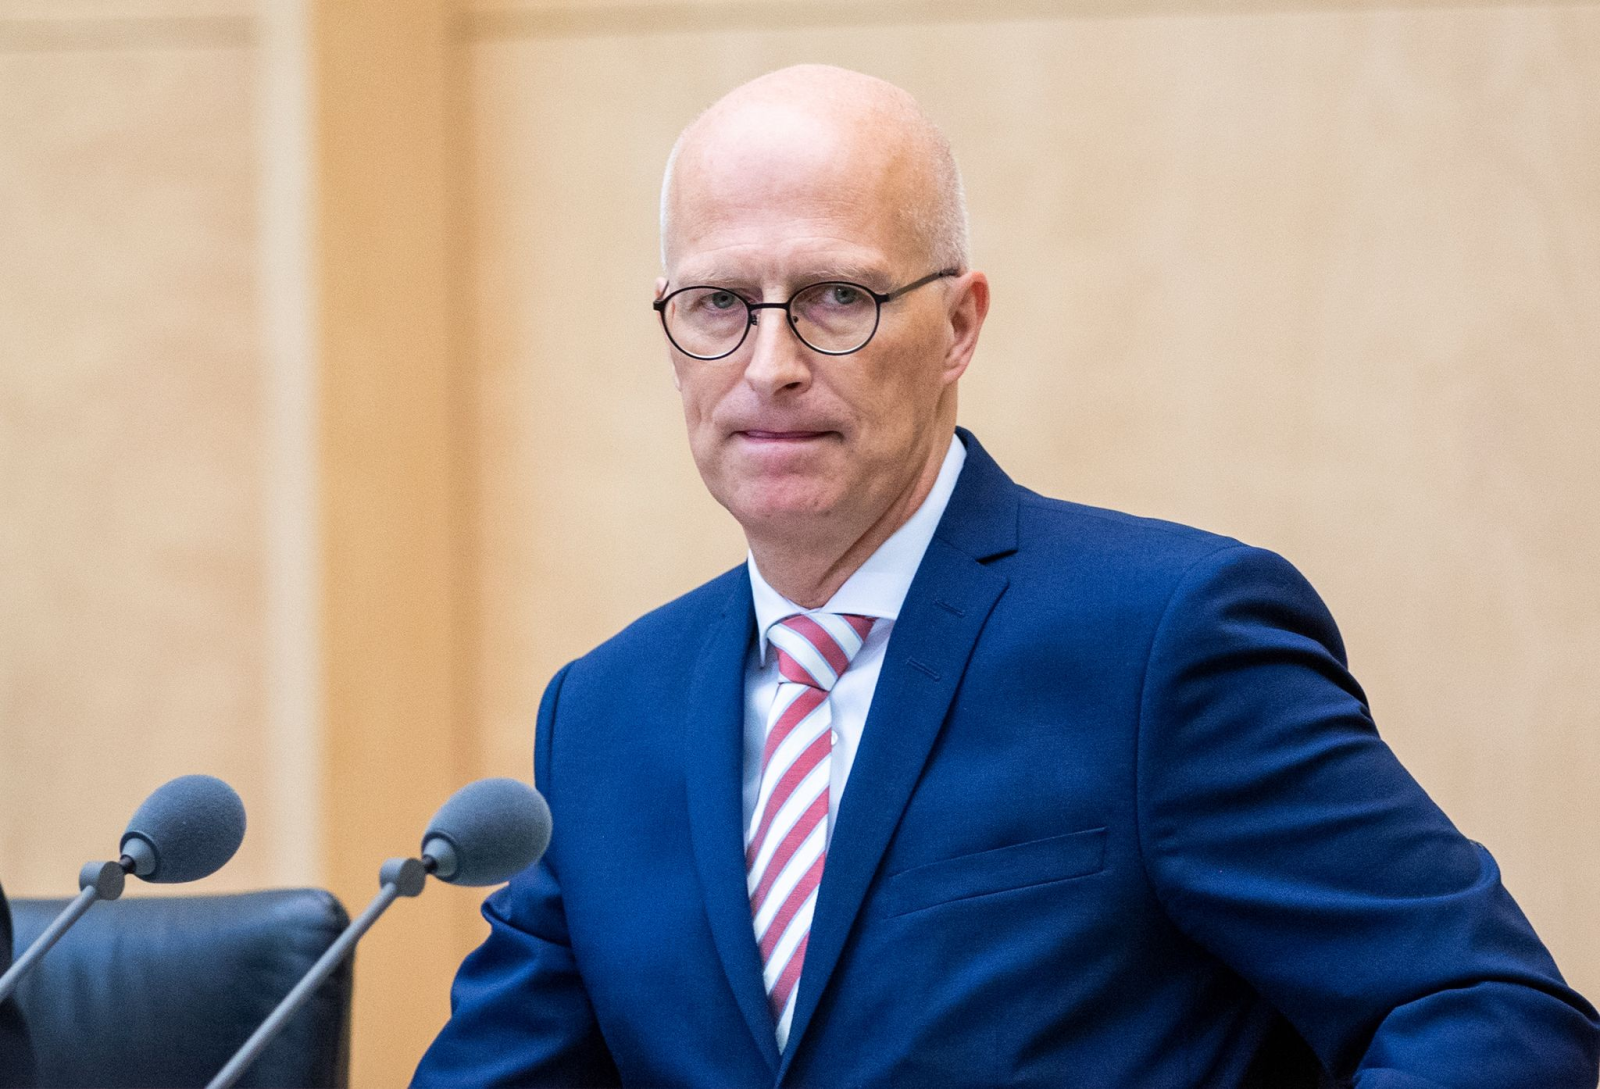 Erster Bürgermeister der Hansestadt Hamburg und neuer Bundesratspräsident Peter Tschentscher in der Bundesratssitzung.